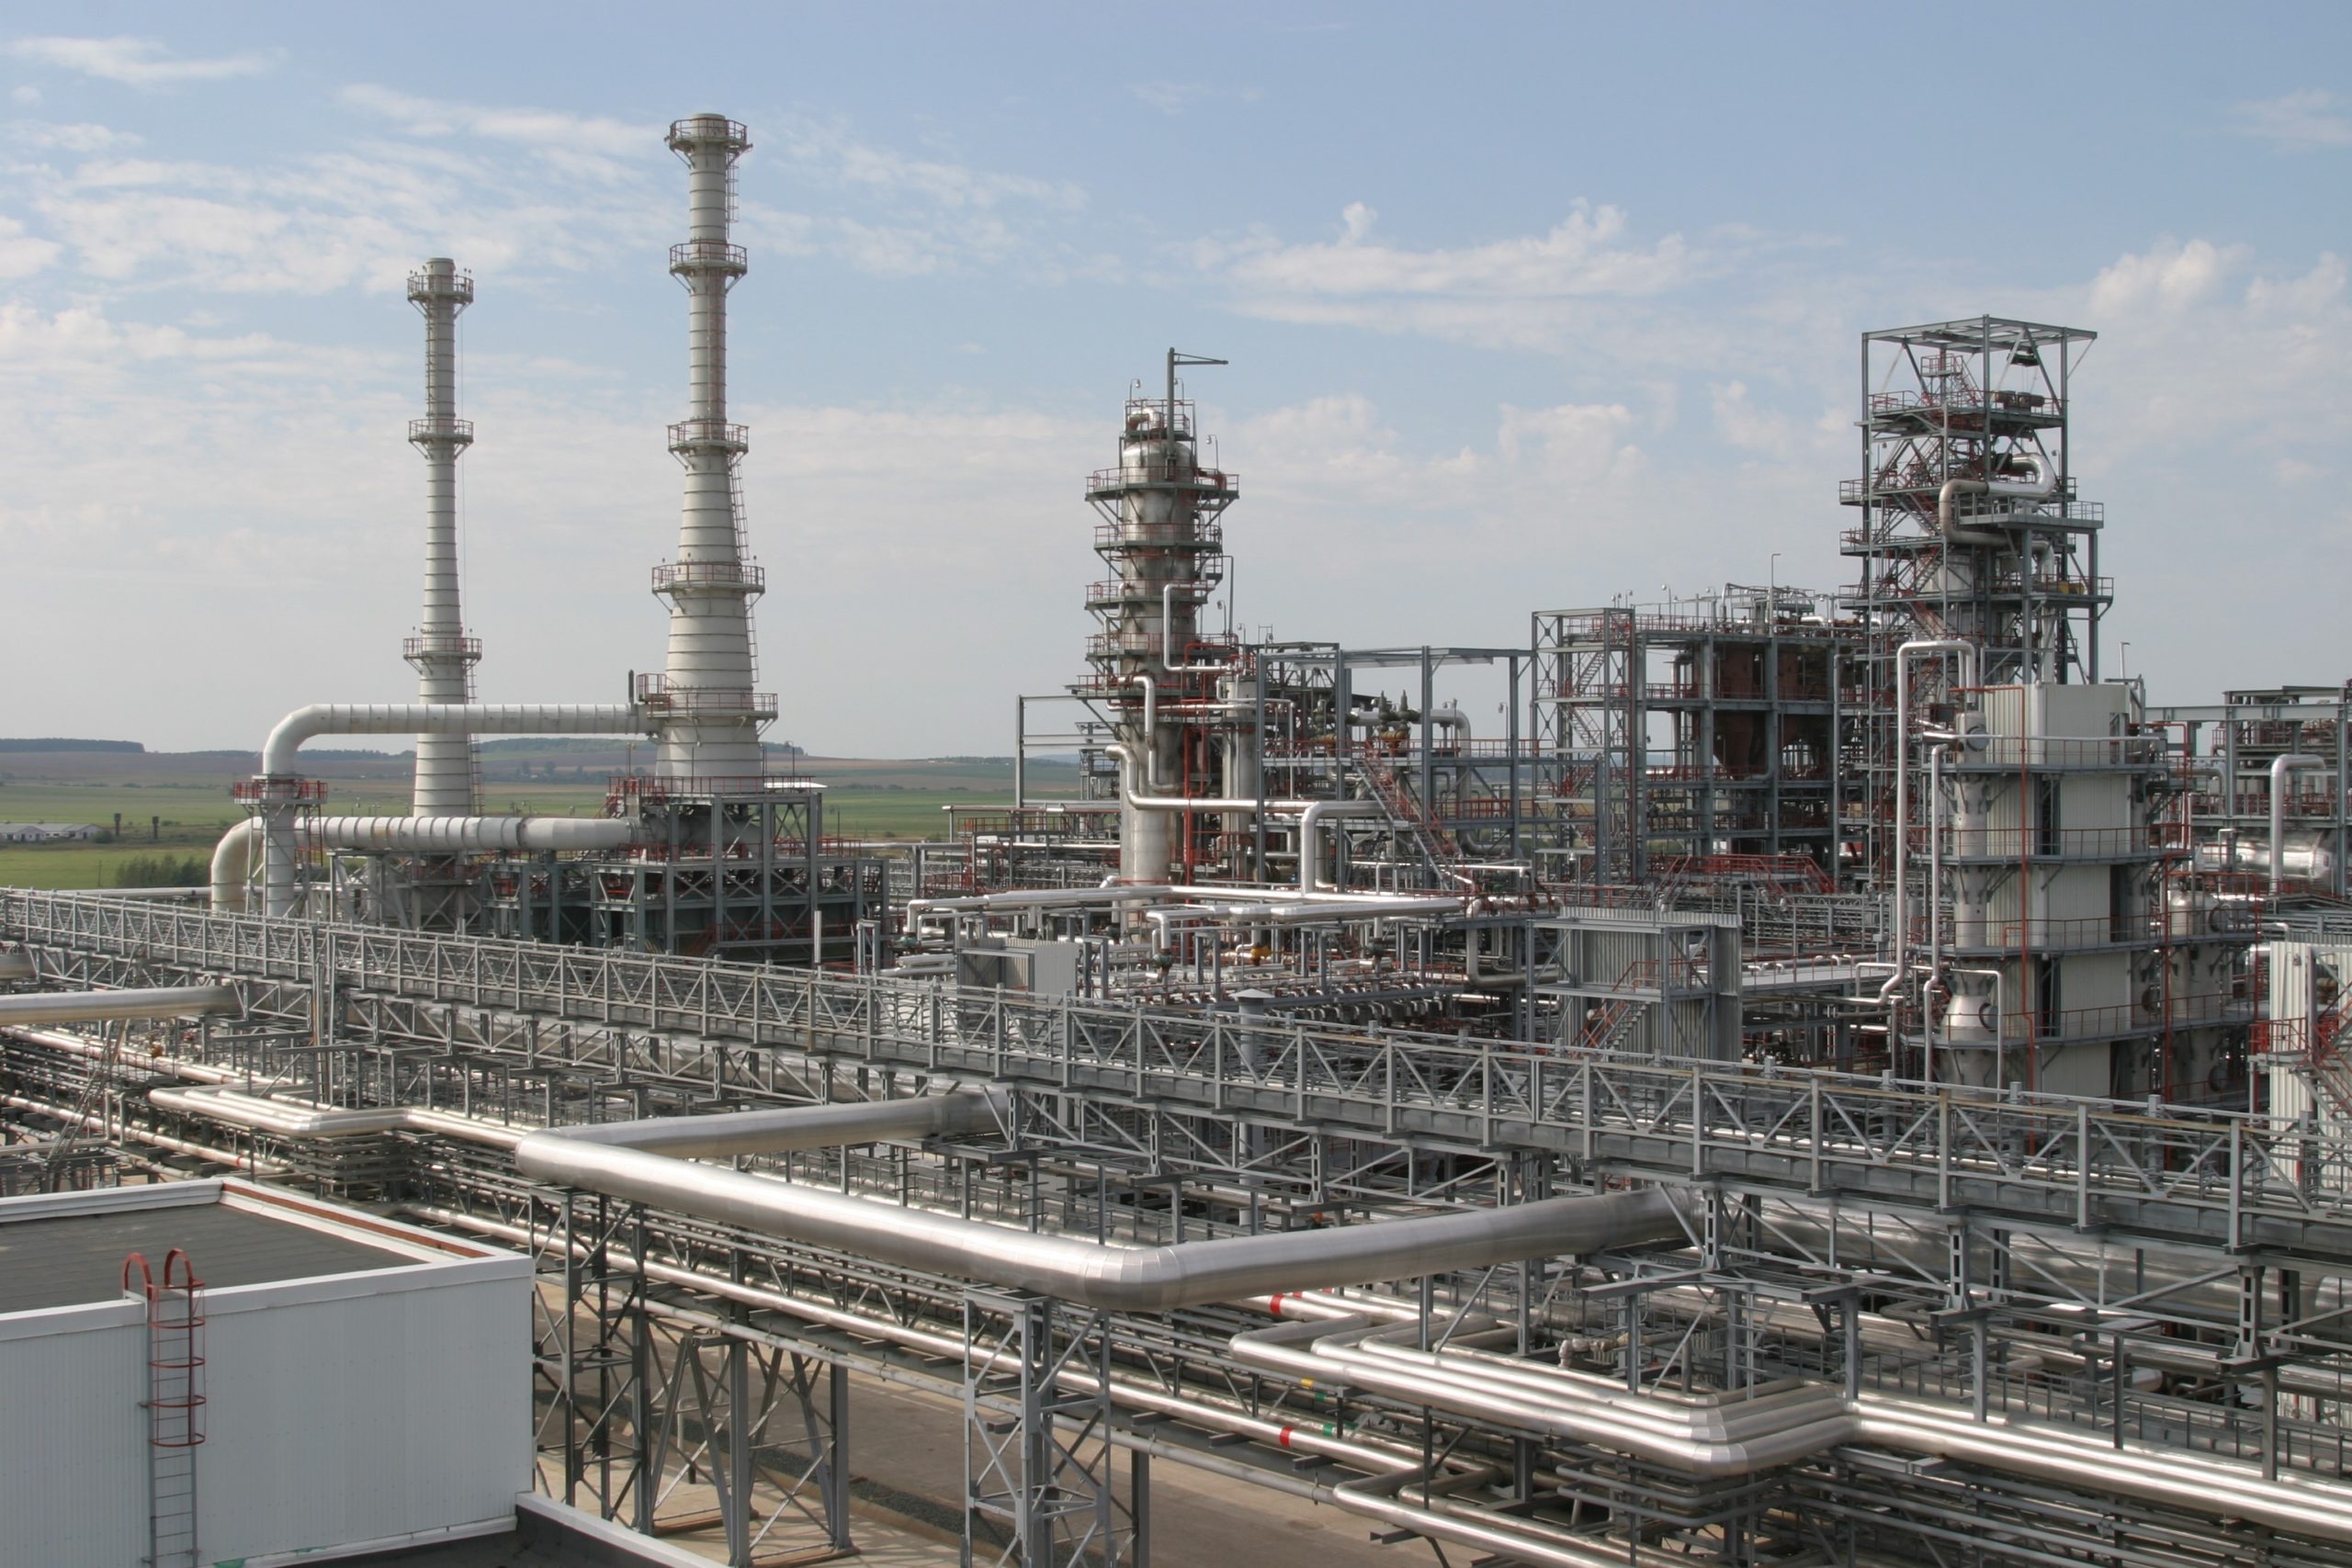 Lukoil's Volgograd refinery